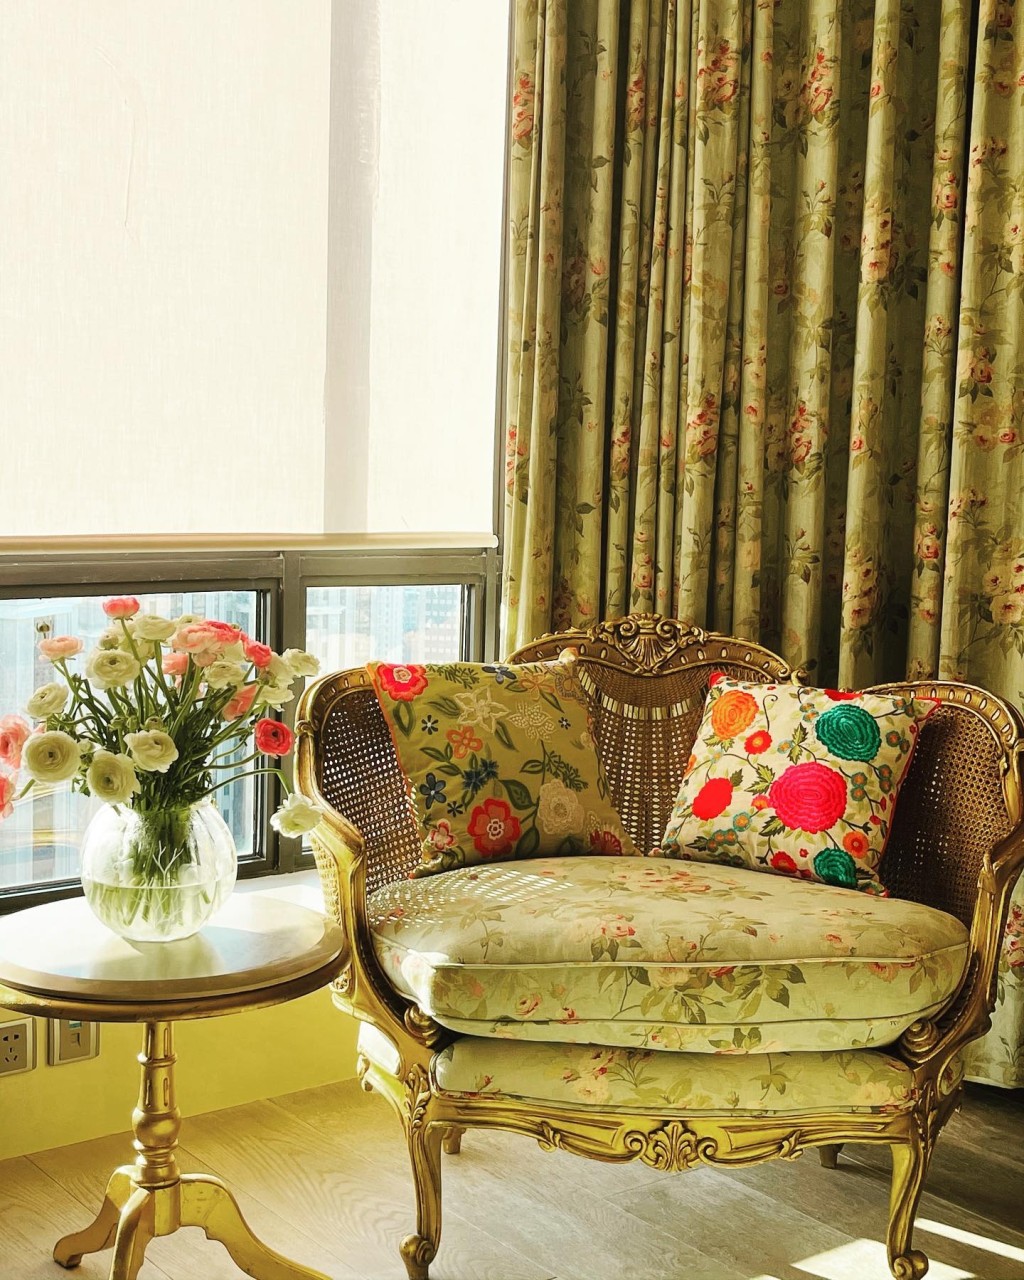 屋内布置与香港大宅一样走奢华复古风格。